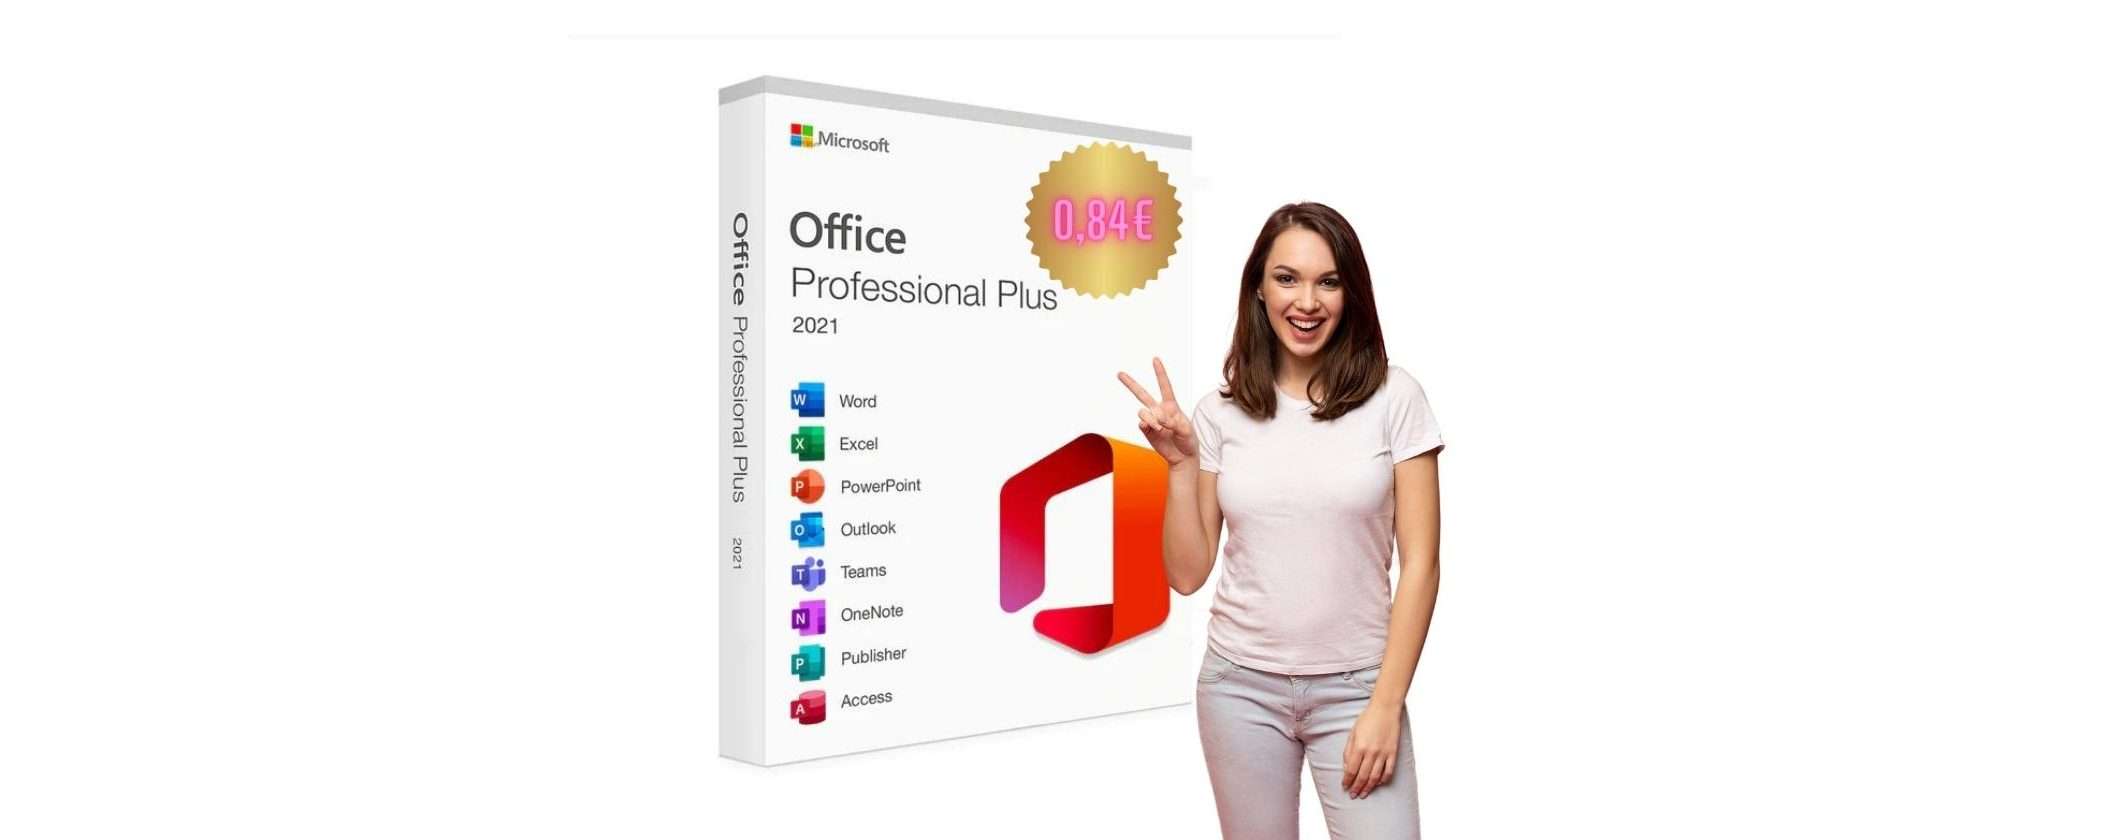 Microsoft Office Professional Plus 2021 a meno di 1€: solo su ePrice